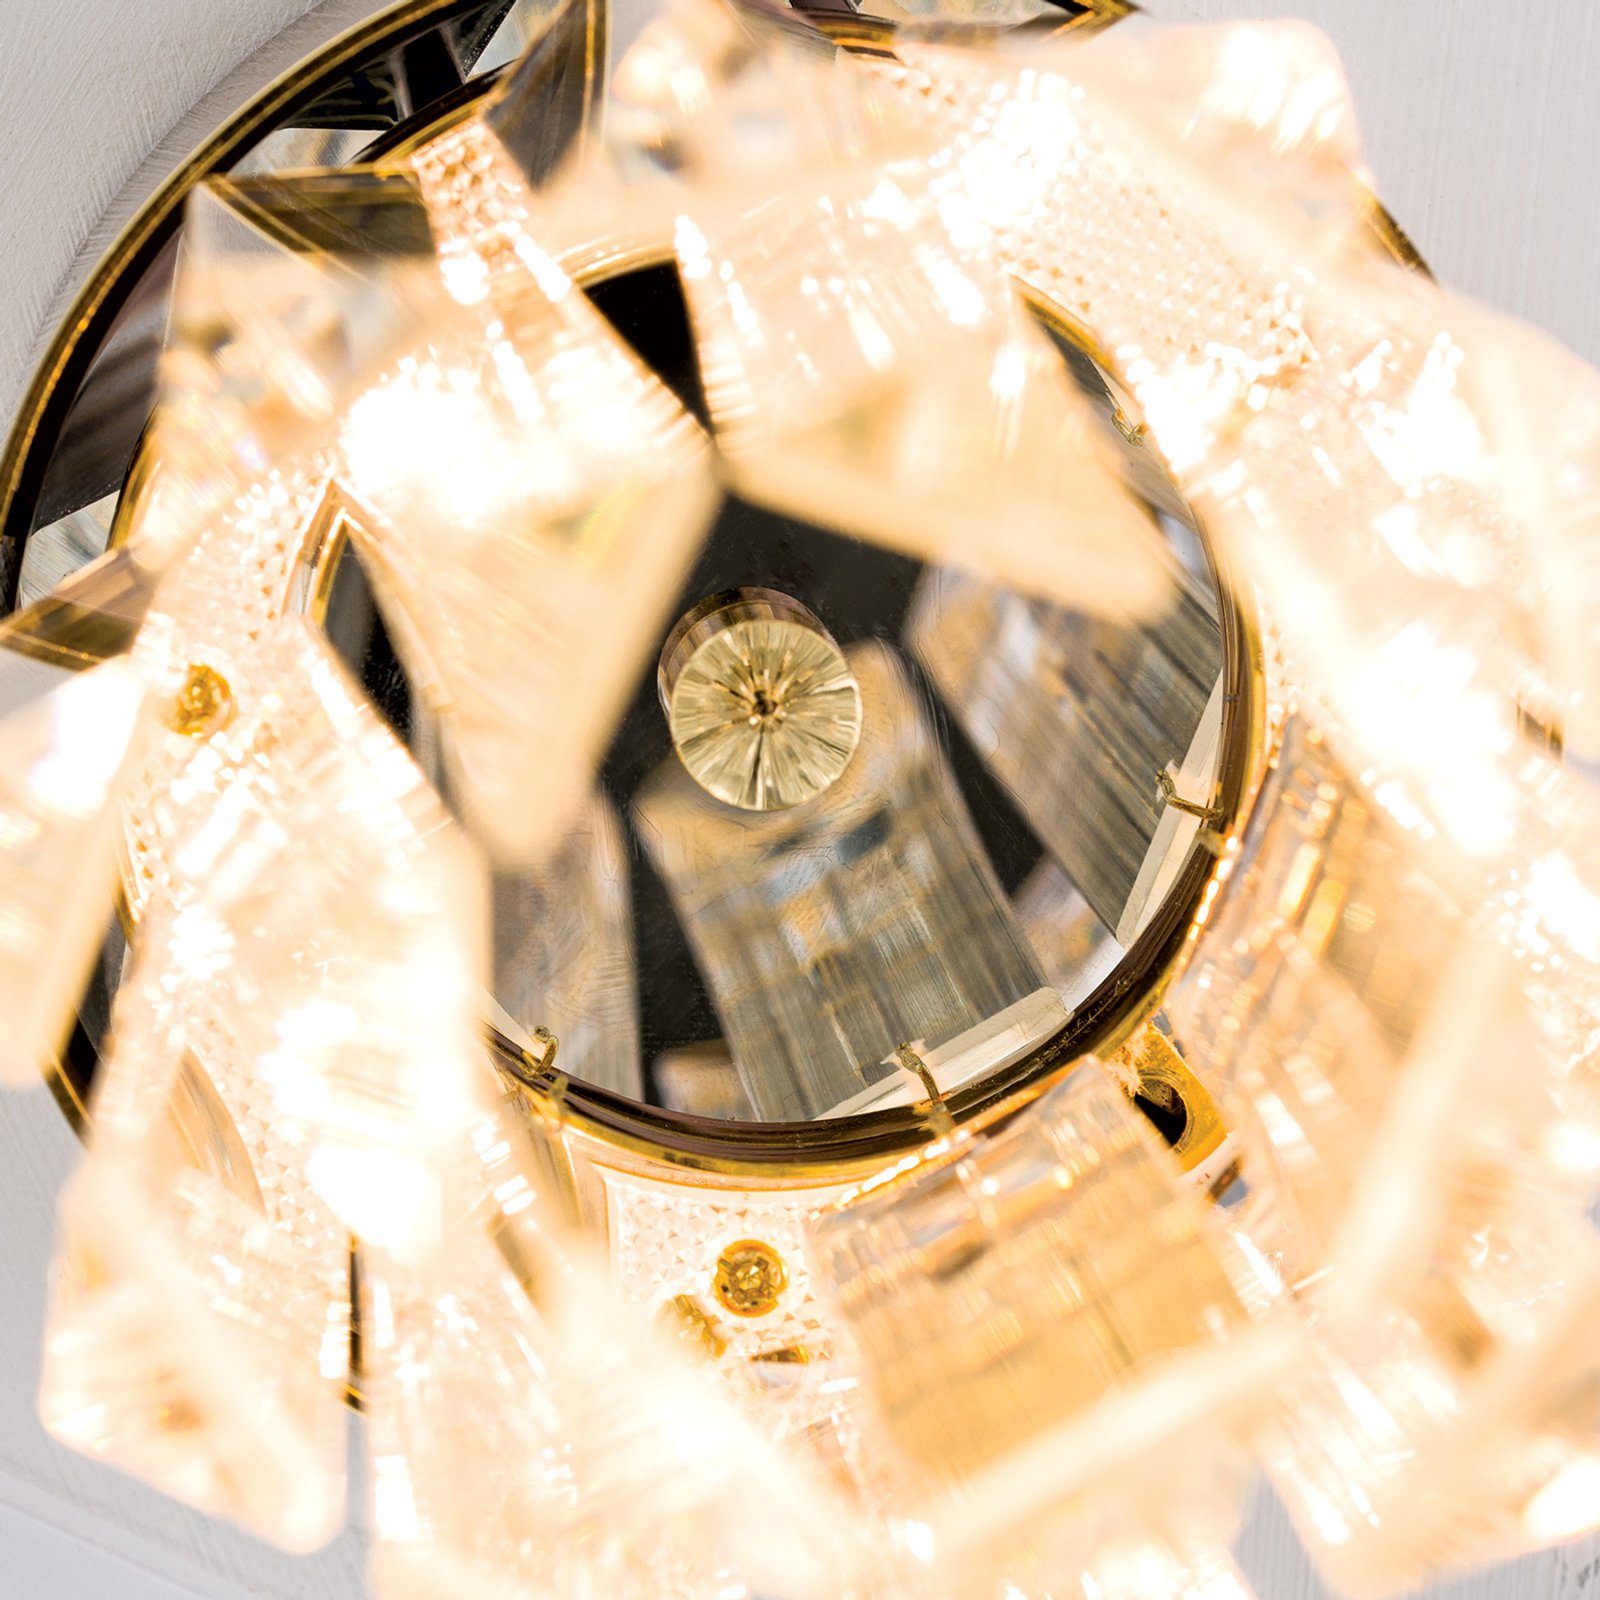 LED stropní Prism, křišťálové sklo, Ø10cm, zlatá